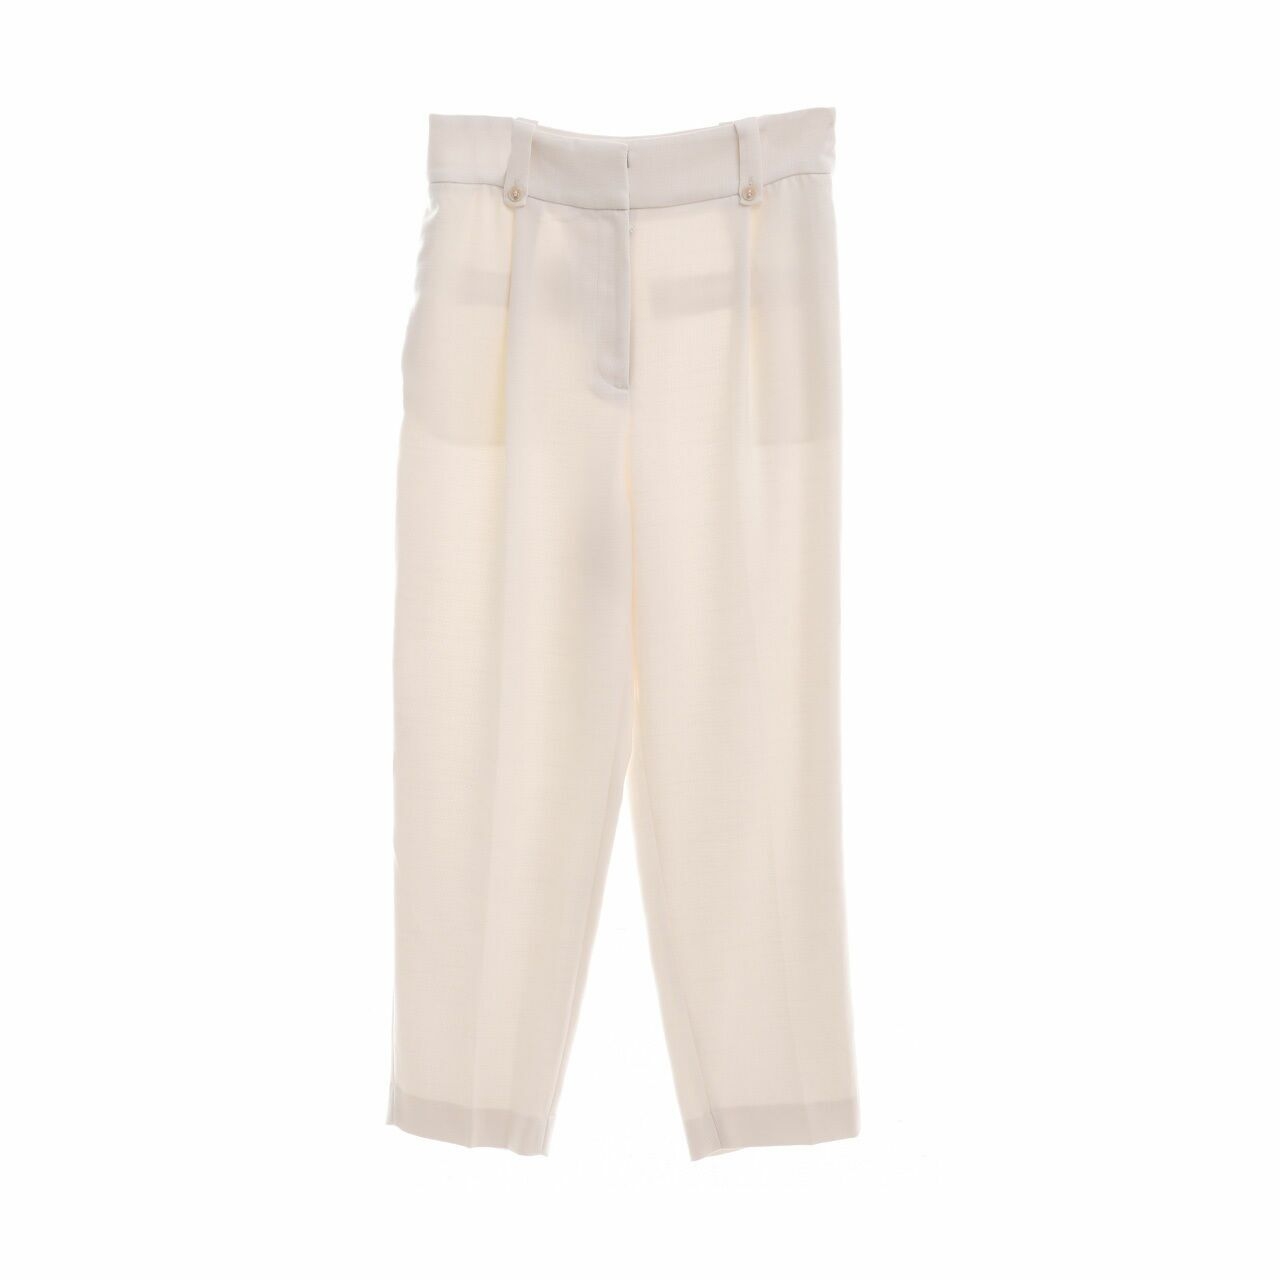 H&M Off White Long Pants